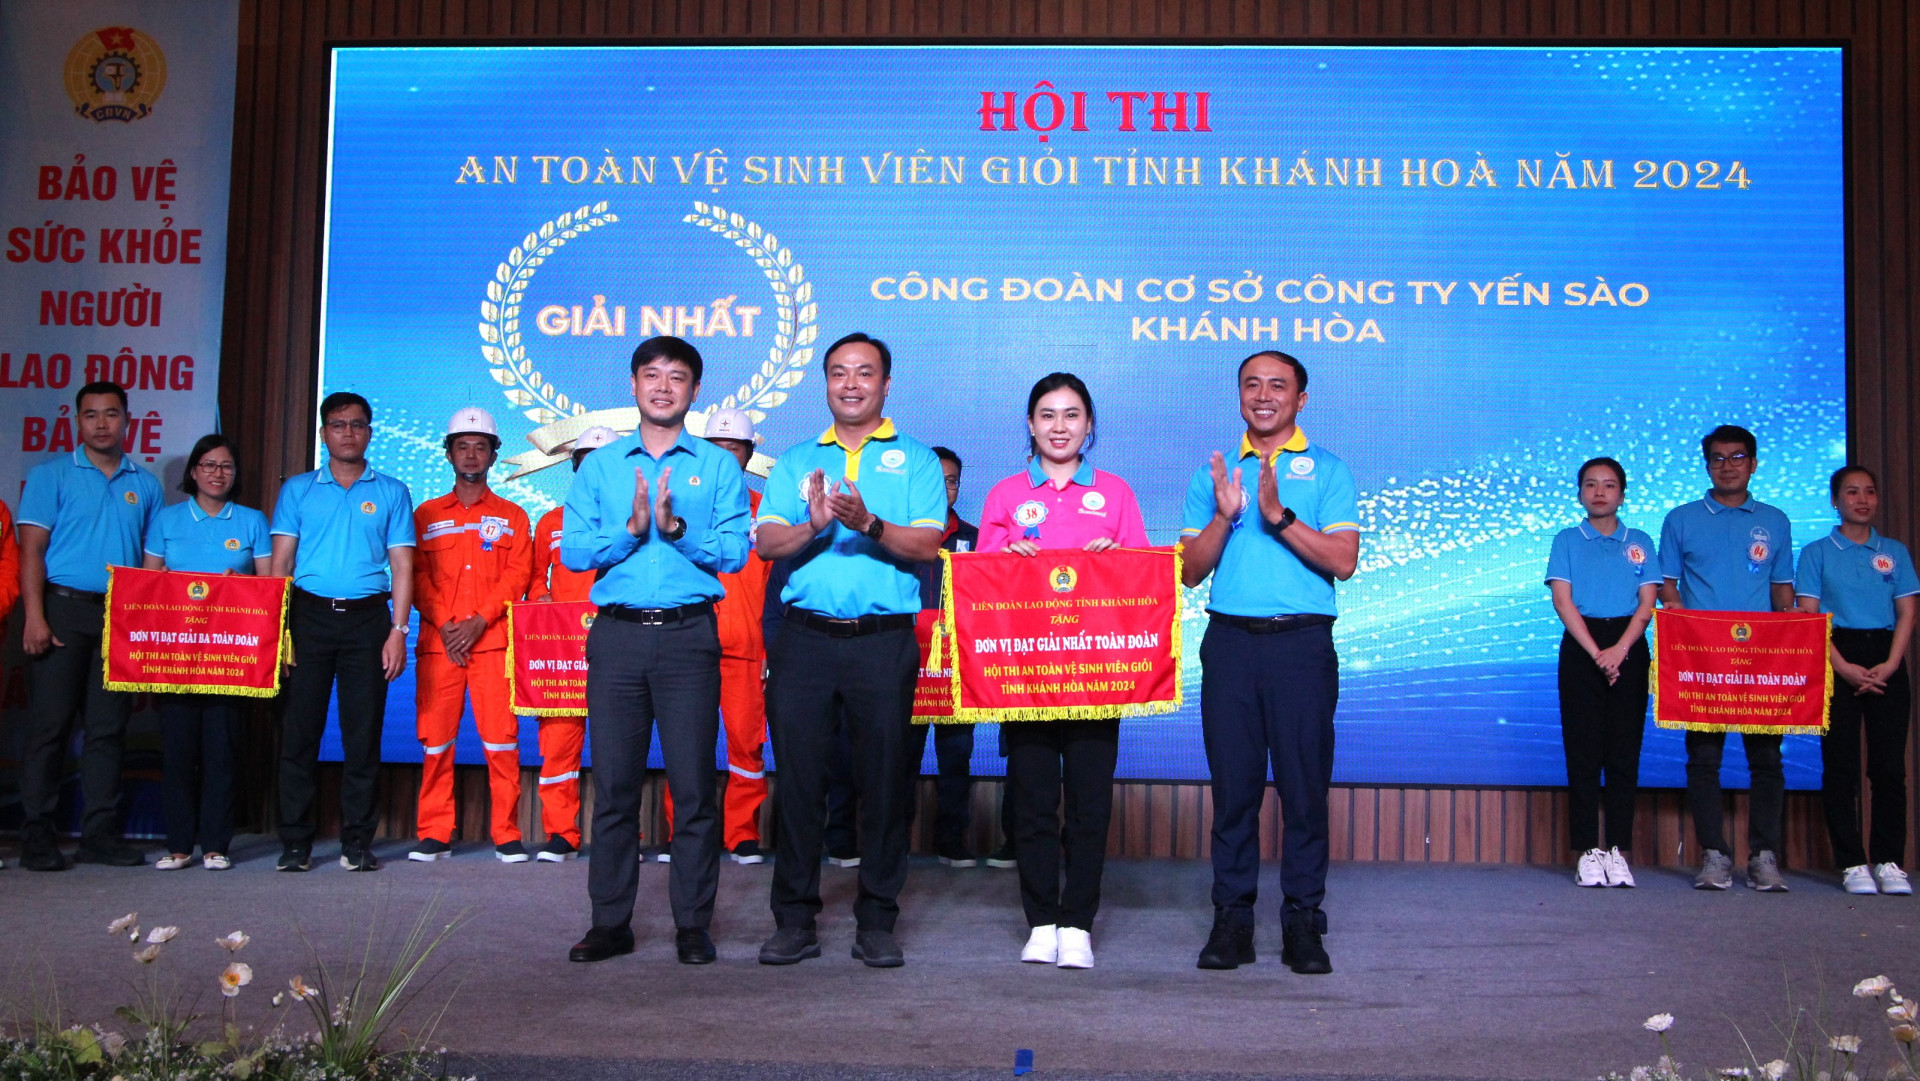 Ban Tổ chức trao giải Nhất cho đội Công đoàn cơ sở Công ty TNHH Nhà nước MTV Yến sào Khánh Hòa.